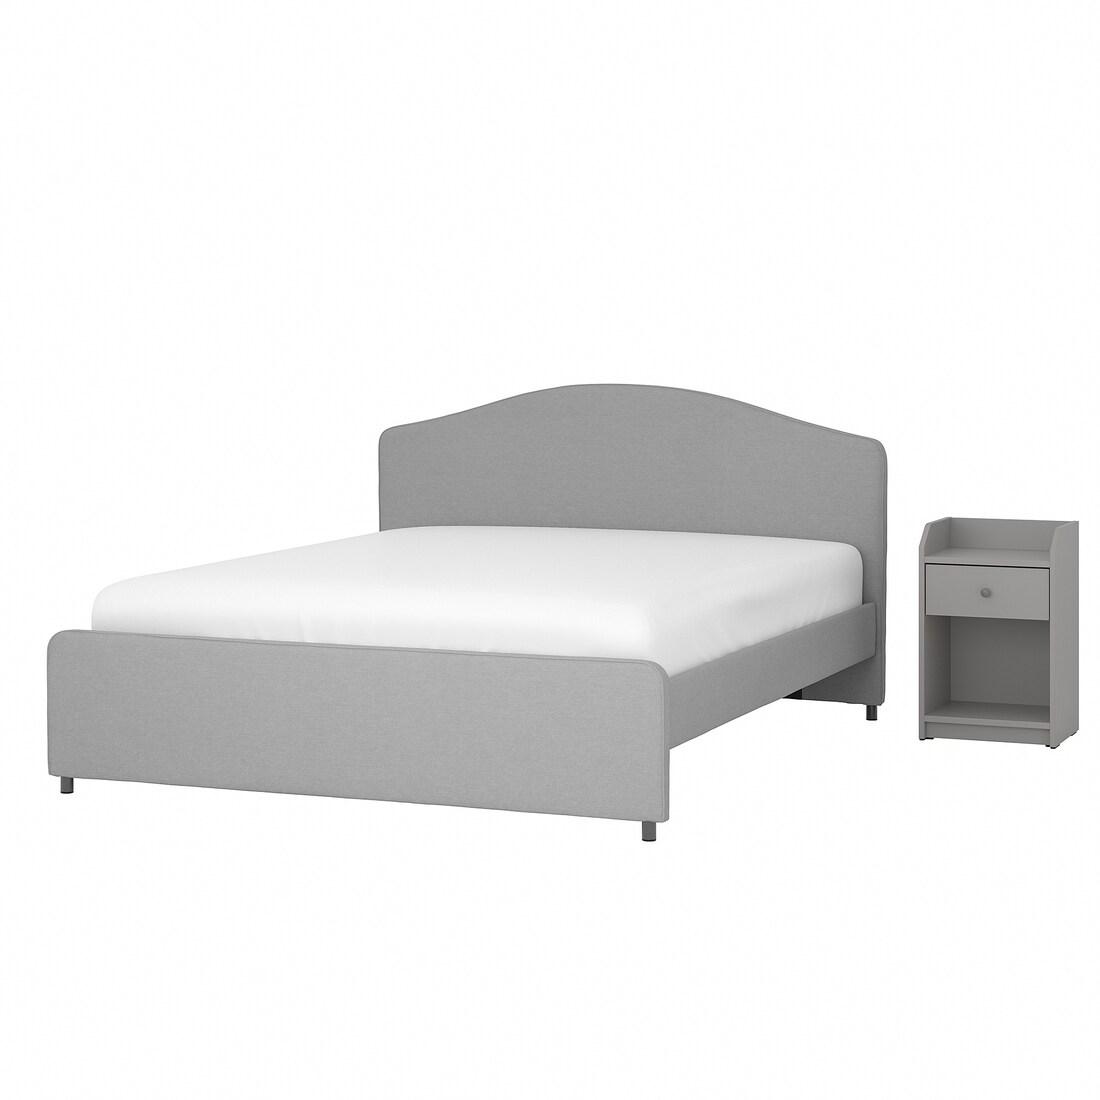 HAUGA Меблі для спальні, комплект. 2 шт., Vissle grey, 140х200 см